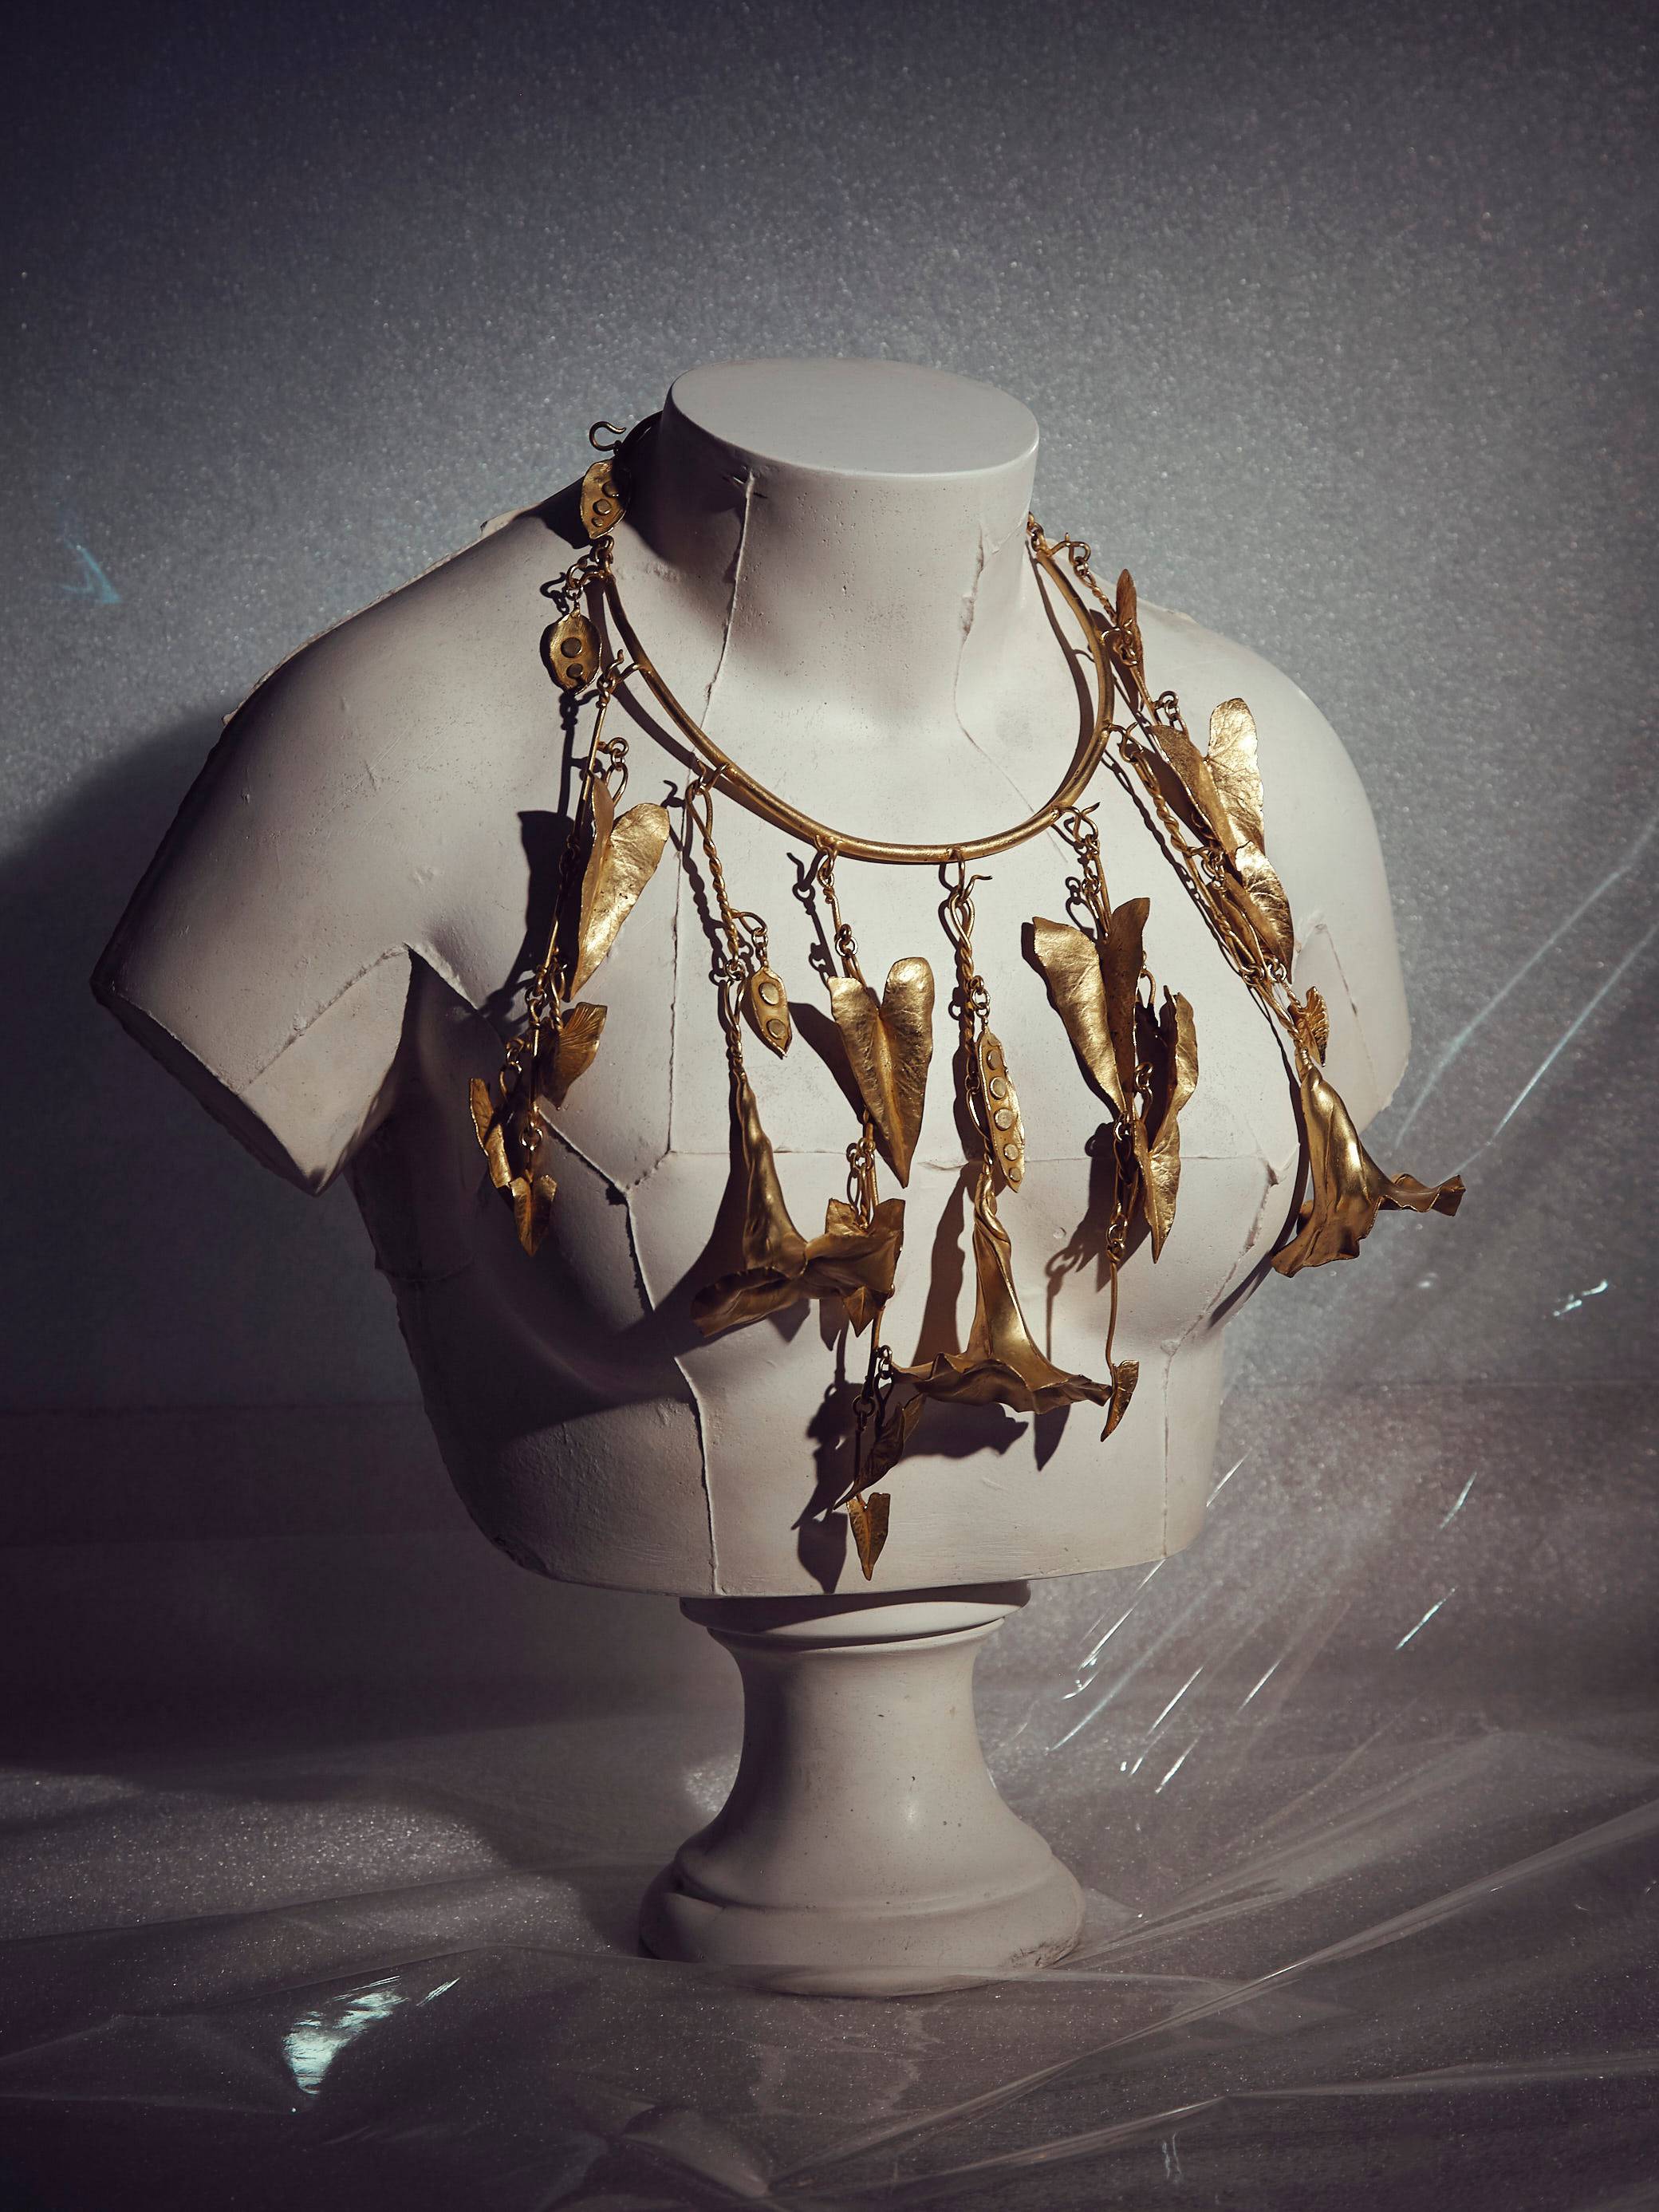 Le styliste Samuel François présente une collection de bijoux à la flamboyance baroque